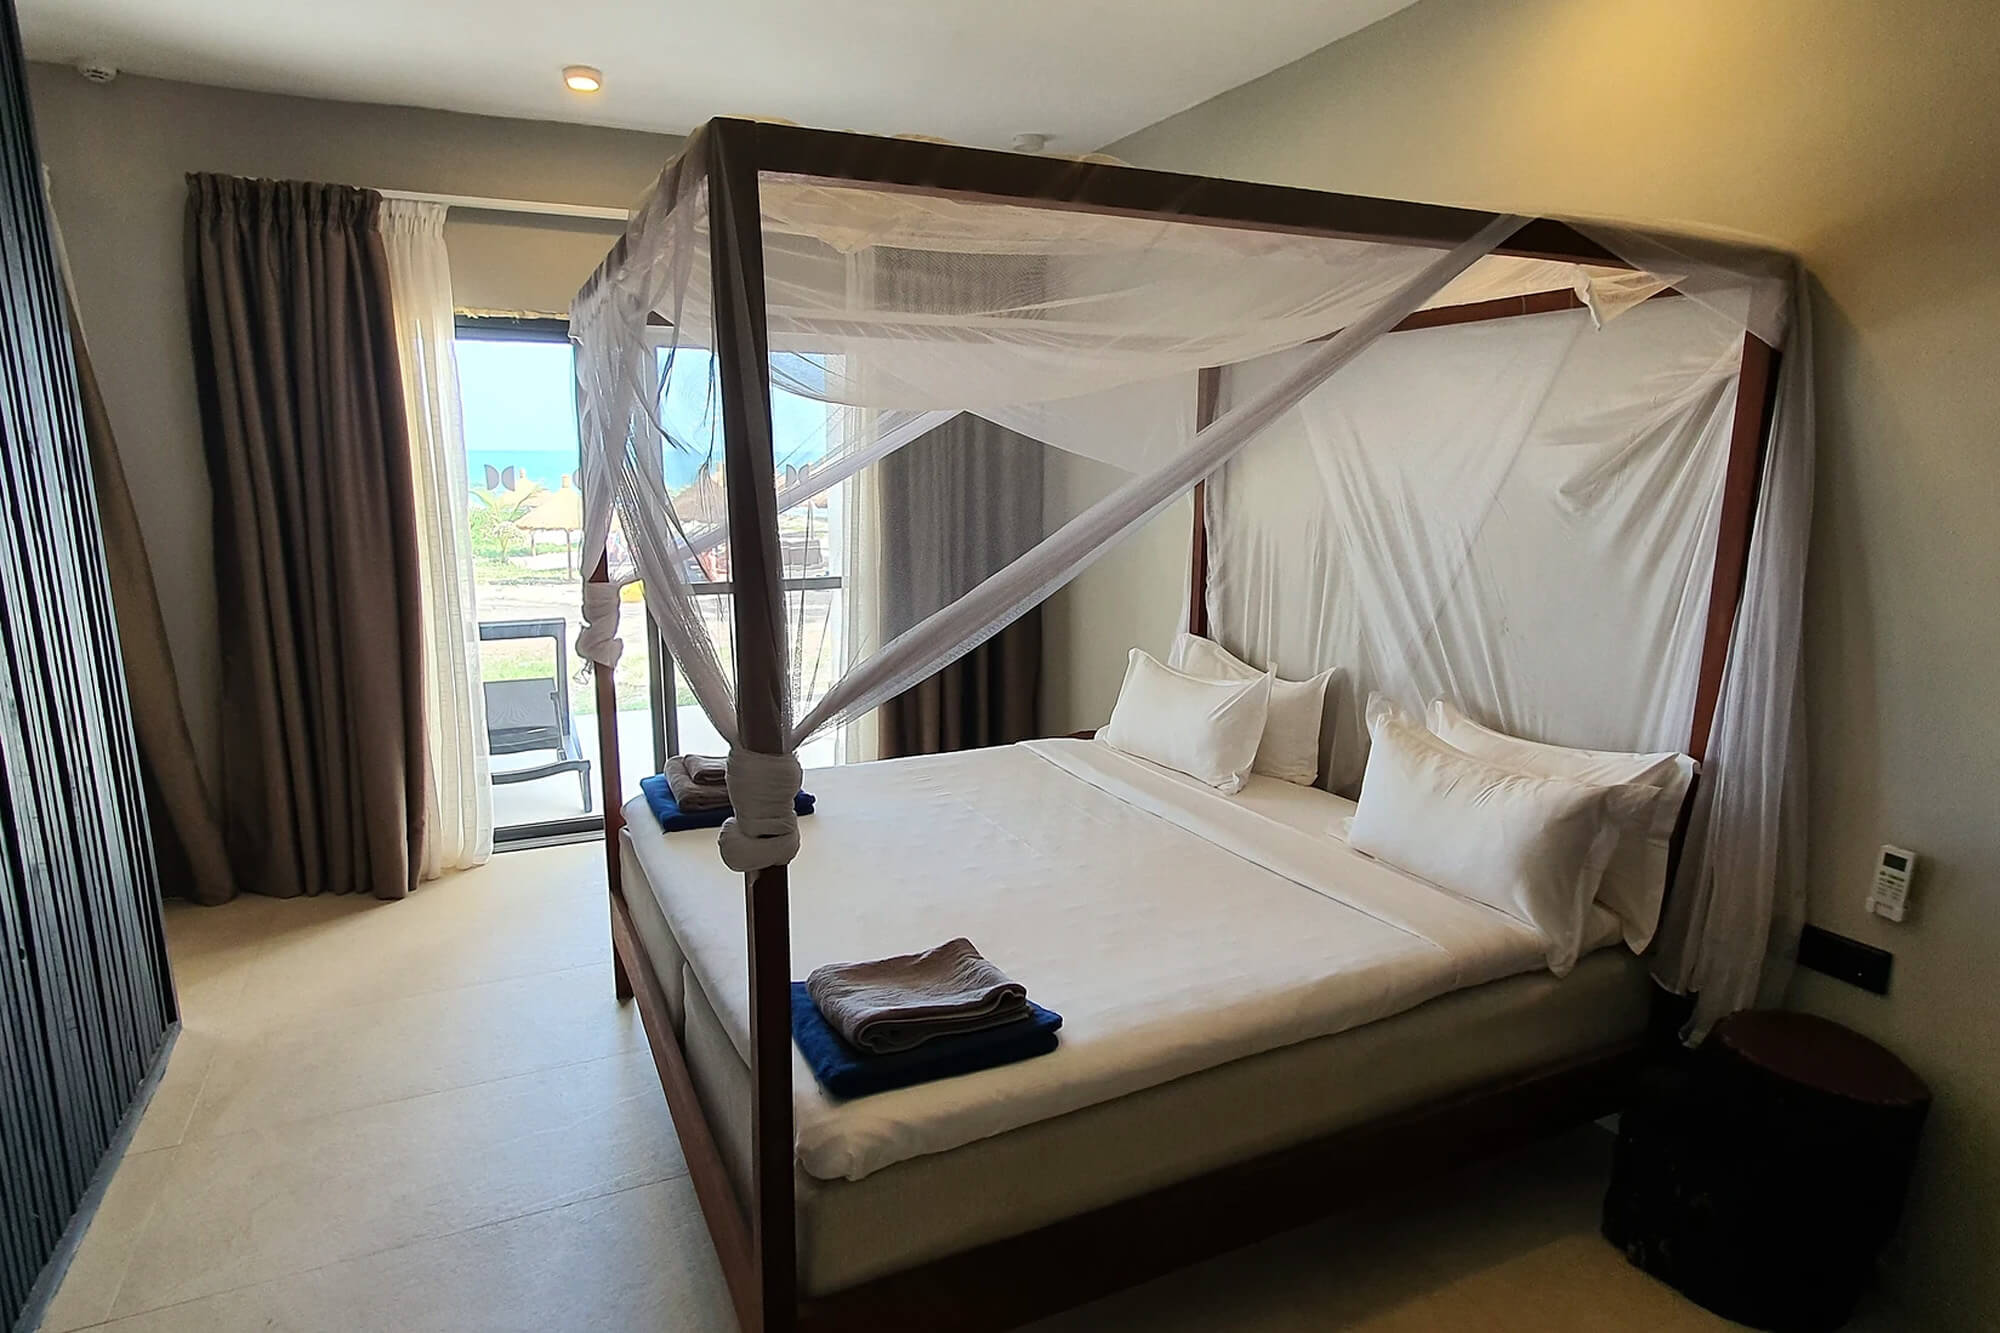 Hotelkamer van het Kalimba Beach Resort hotel in Gambia